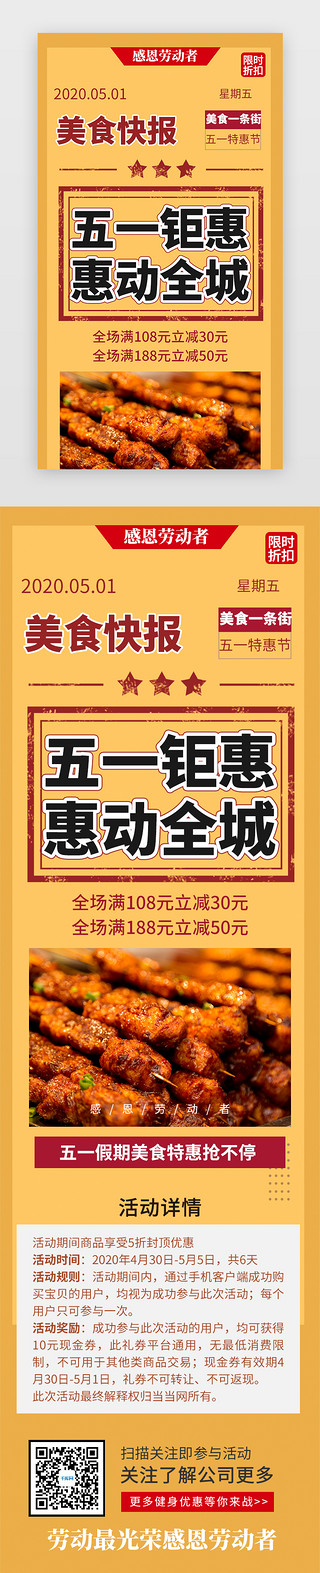 51特惠促销海报UI设计素材_五一美食特惠活动H5